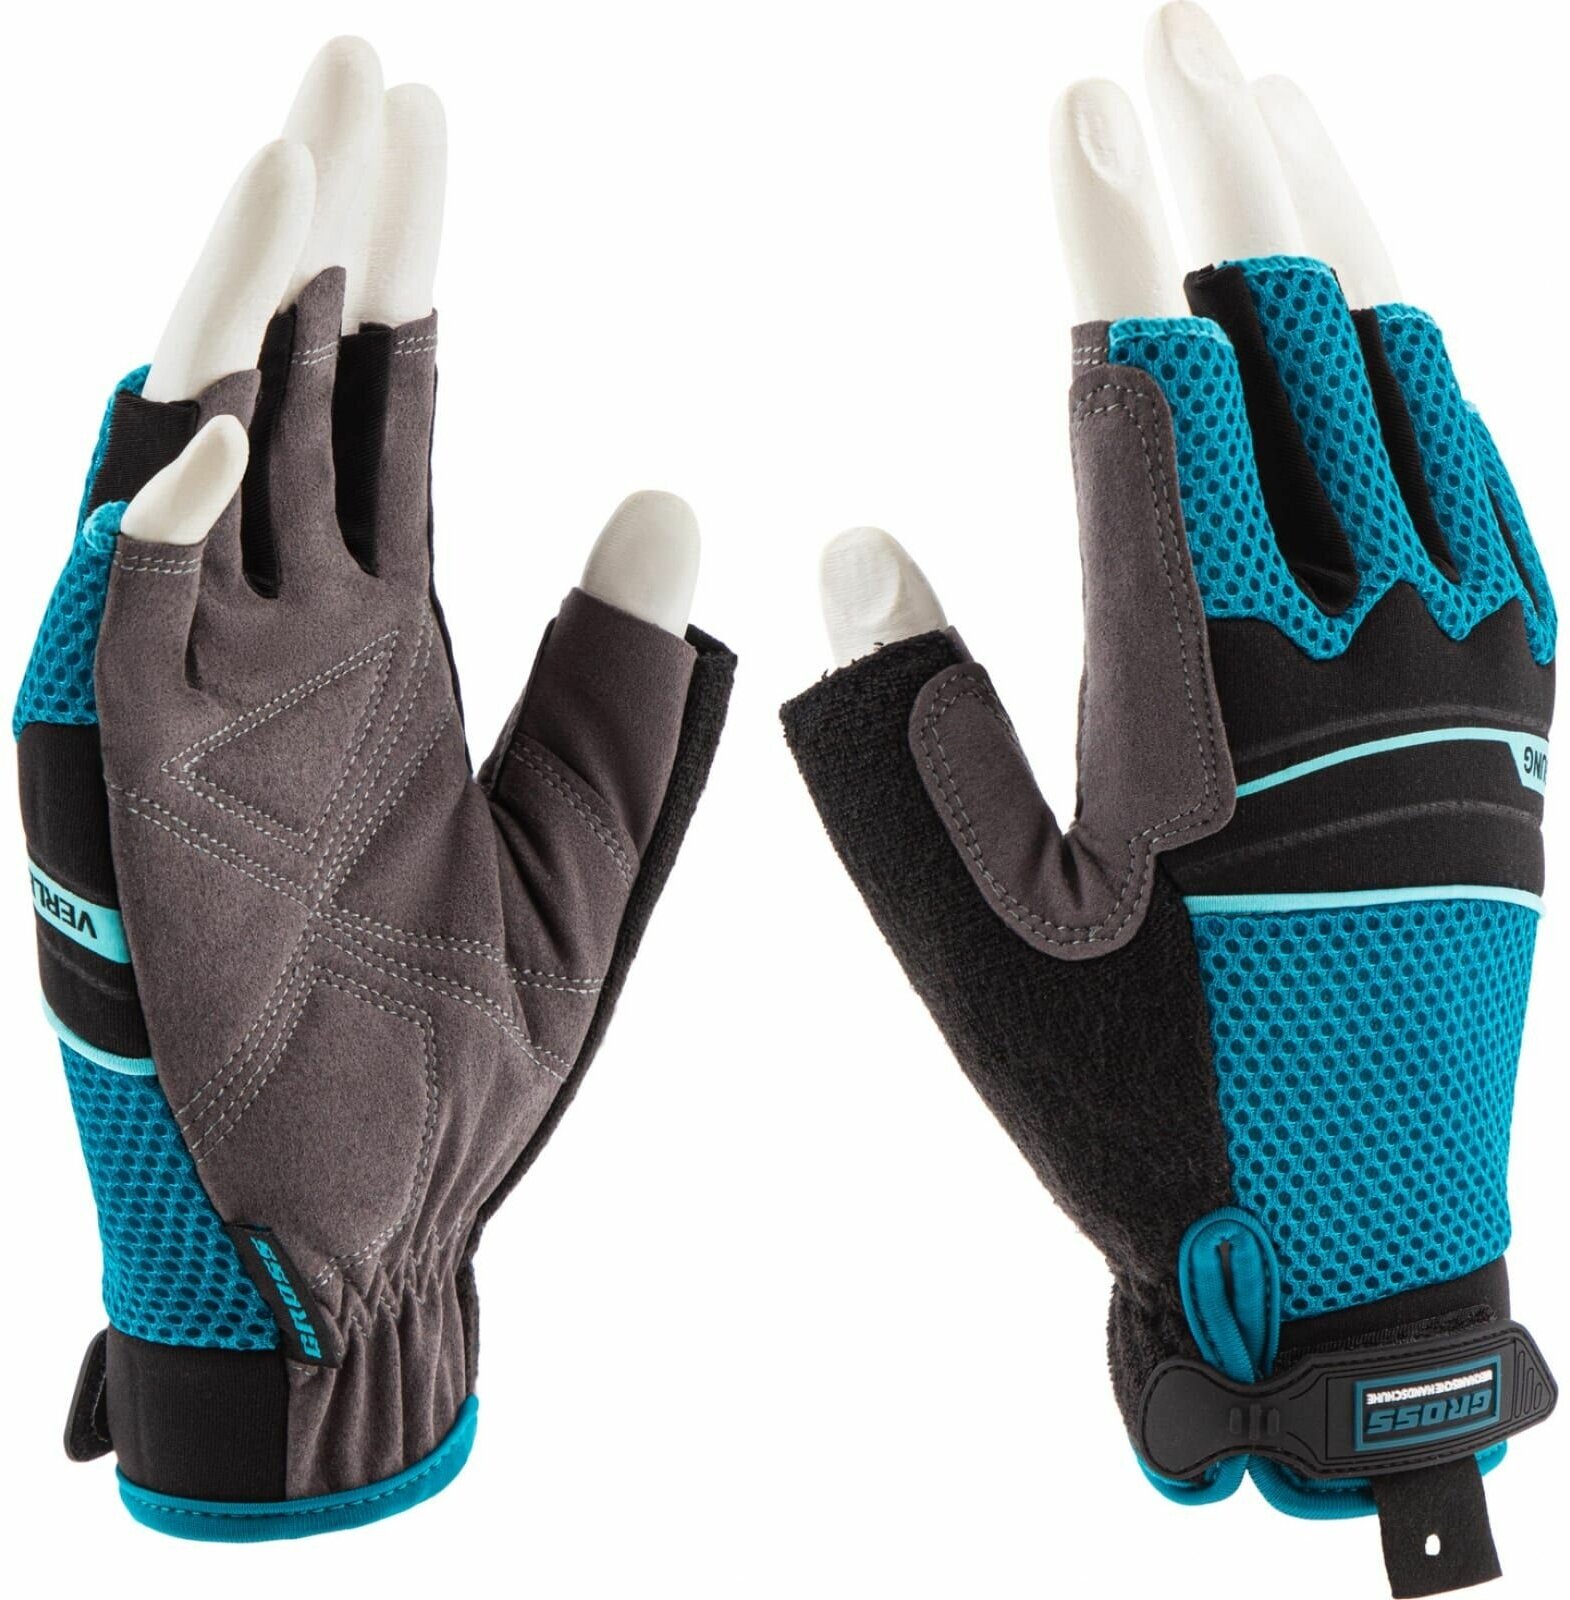 Перчатки комбинированные облегченные с открытыми пальцами (L) GROSS 90316